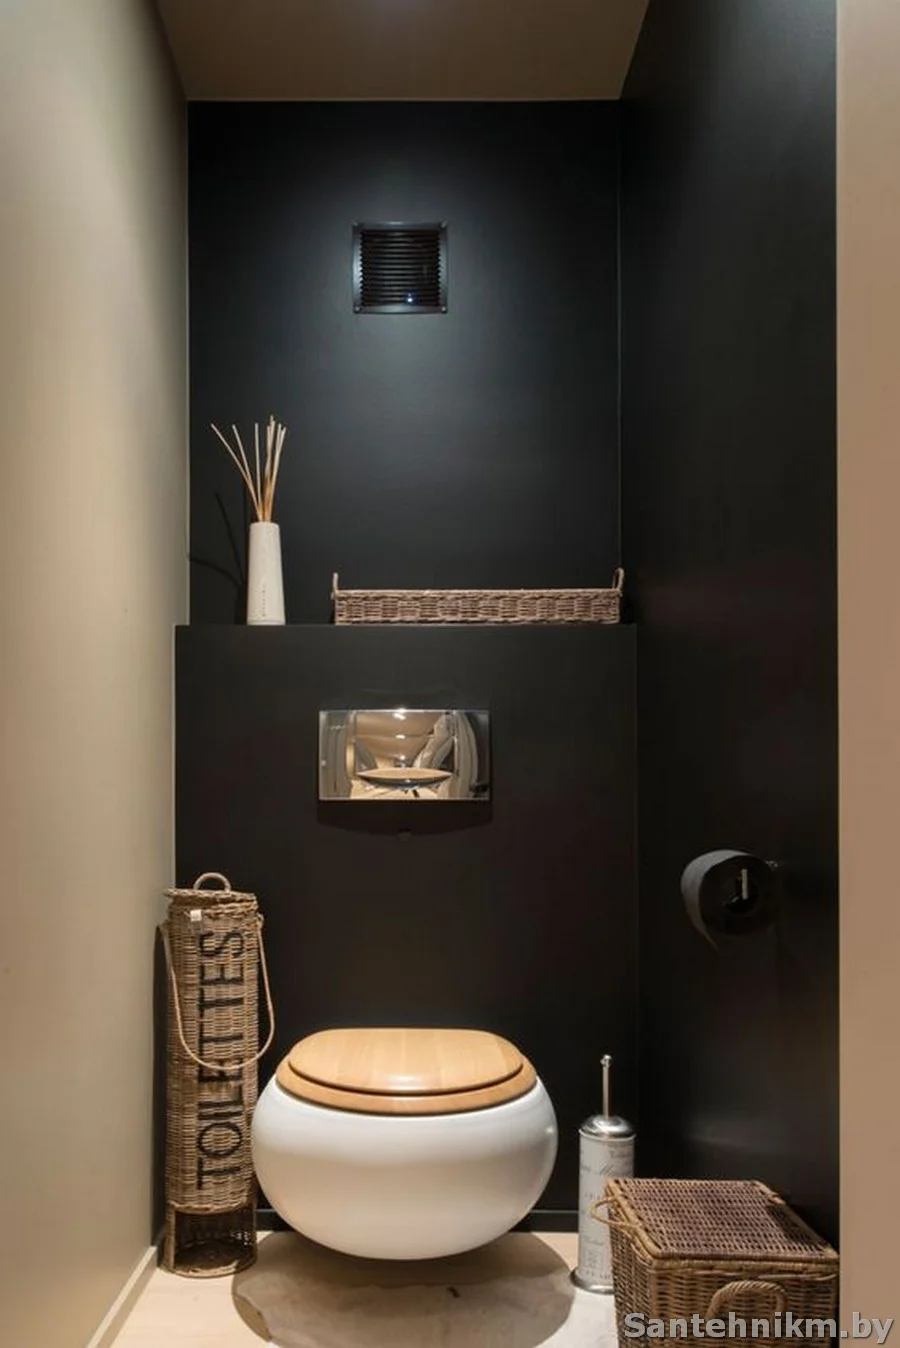 «Стоит ли делать дизайн туалета черно-белым, если помещение очень небольшое? » — Яндекс Кью